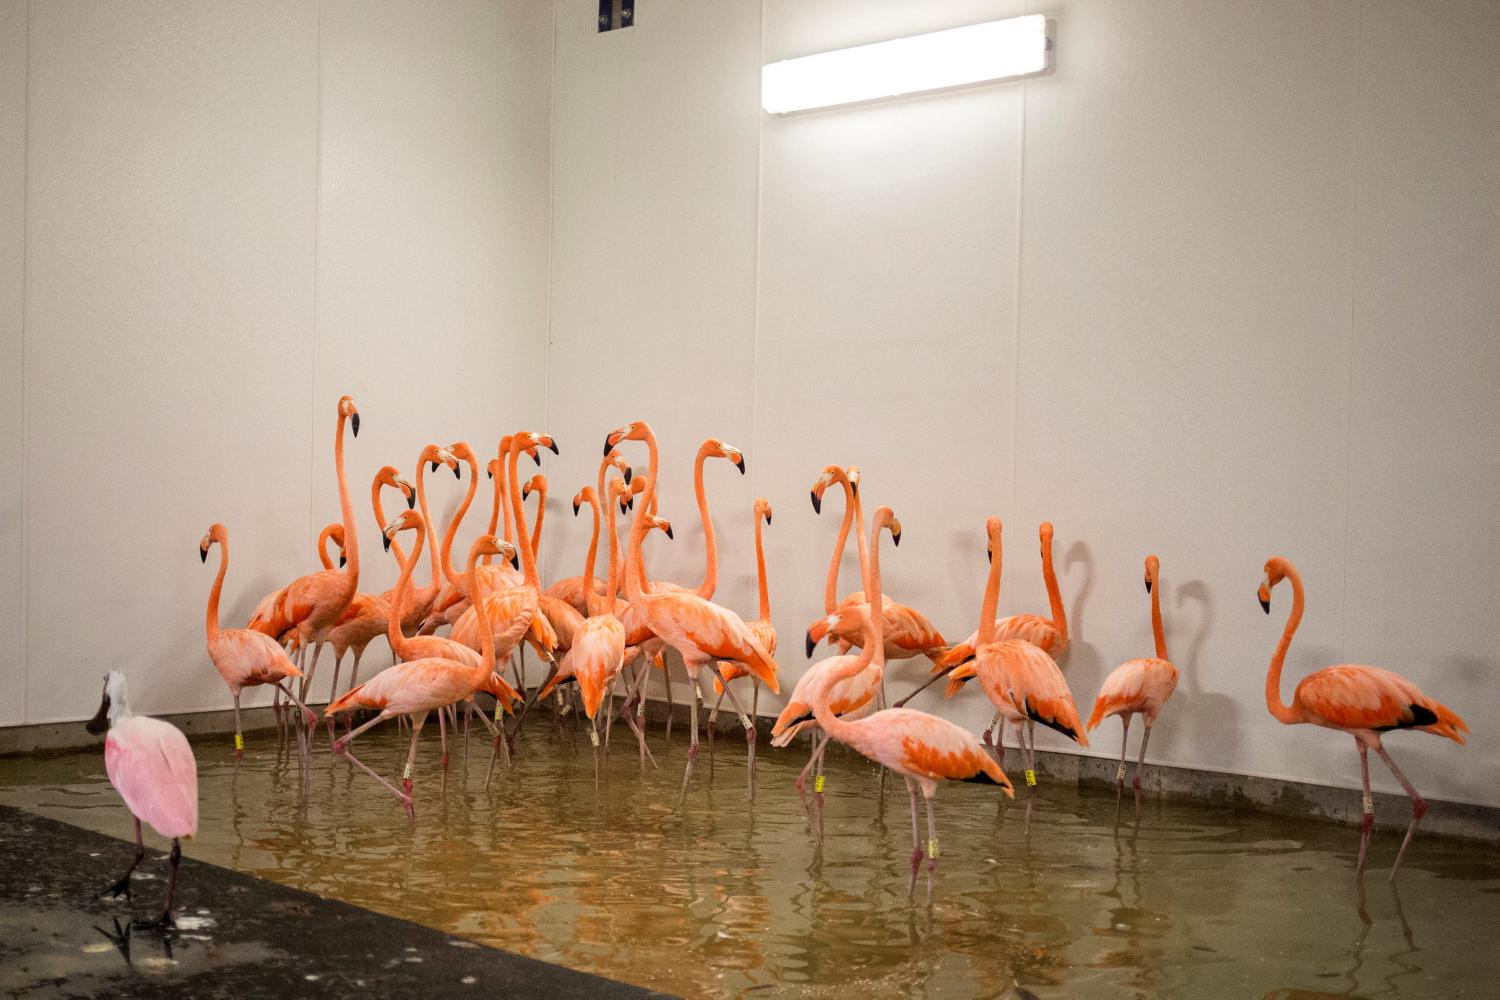 REFUGIADOS. Los flamencos del zoológico de Miami fueron trasladados a un refugio. REUTERS